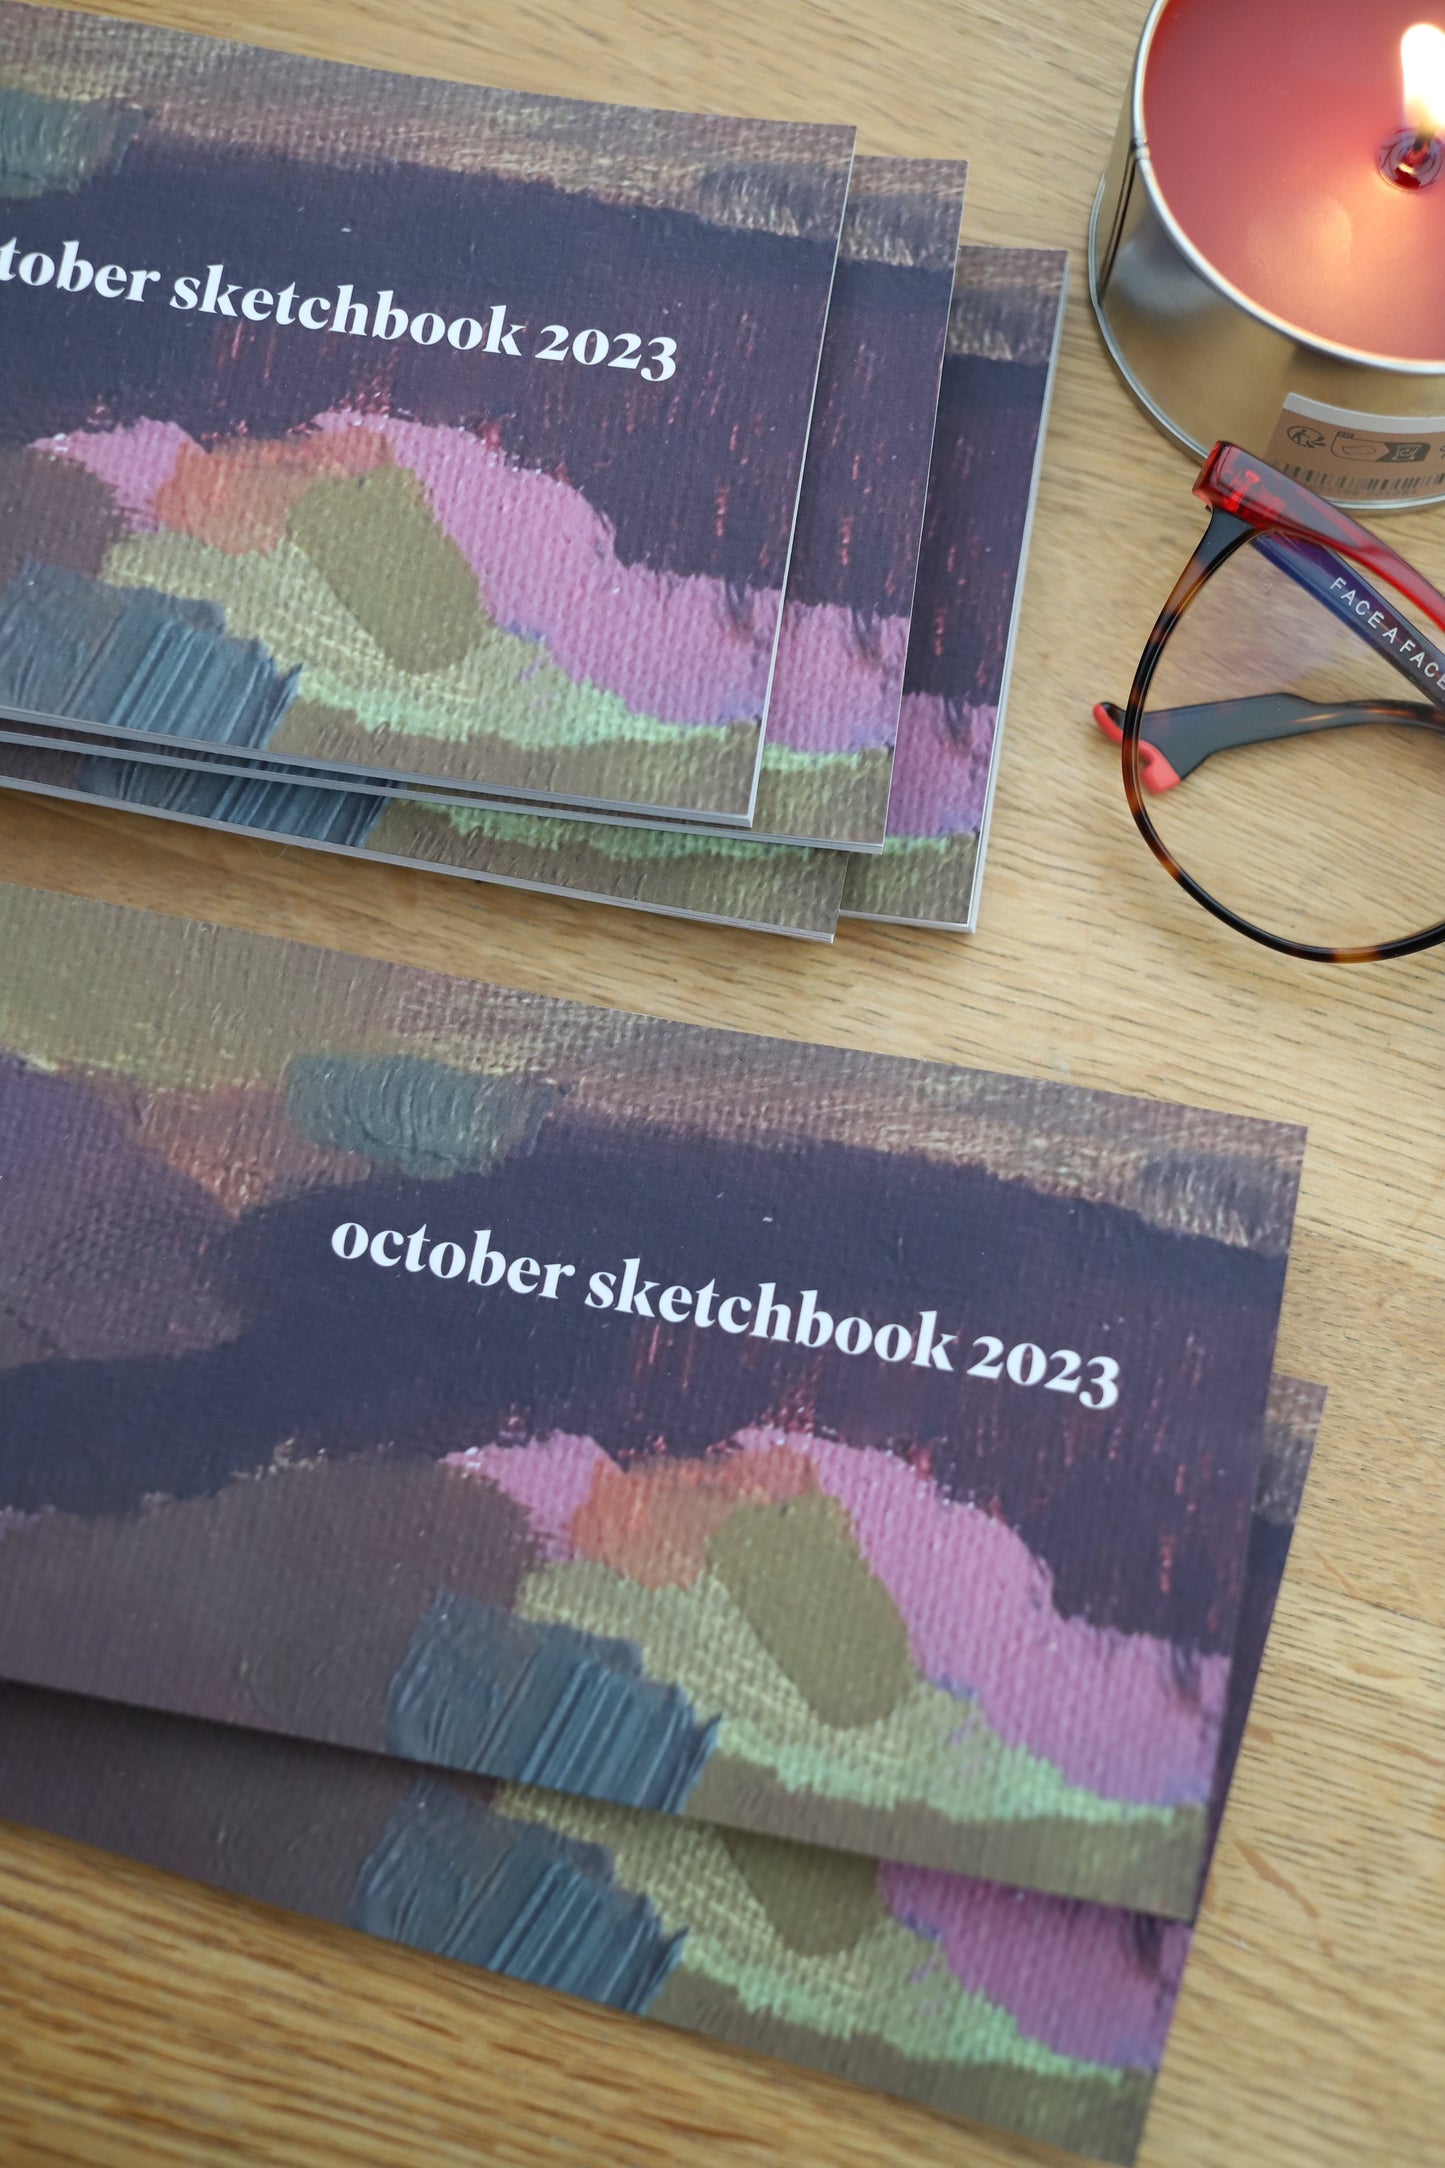 October 2023 sketchbook